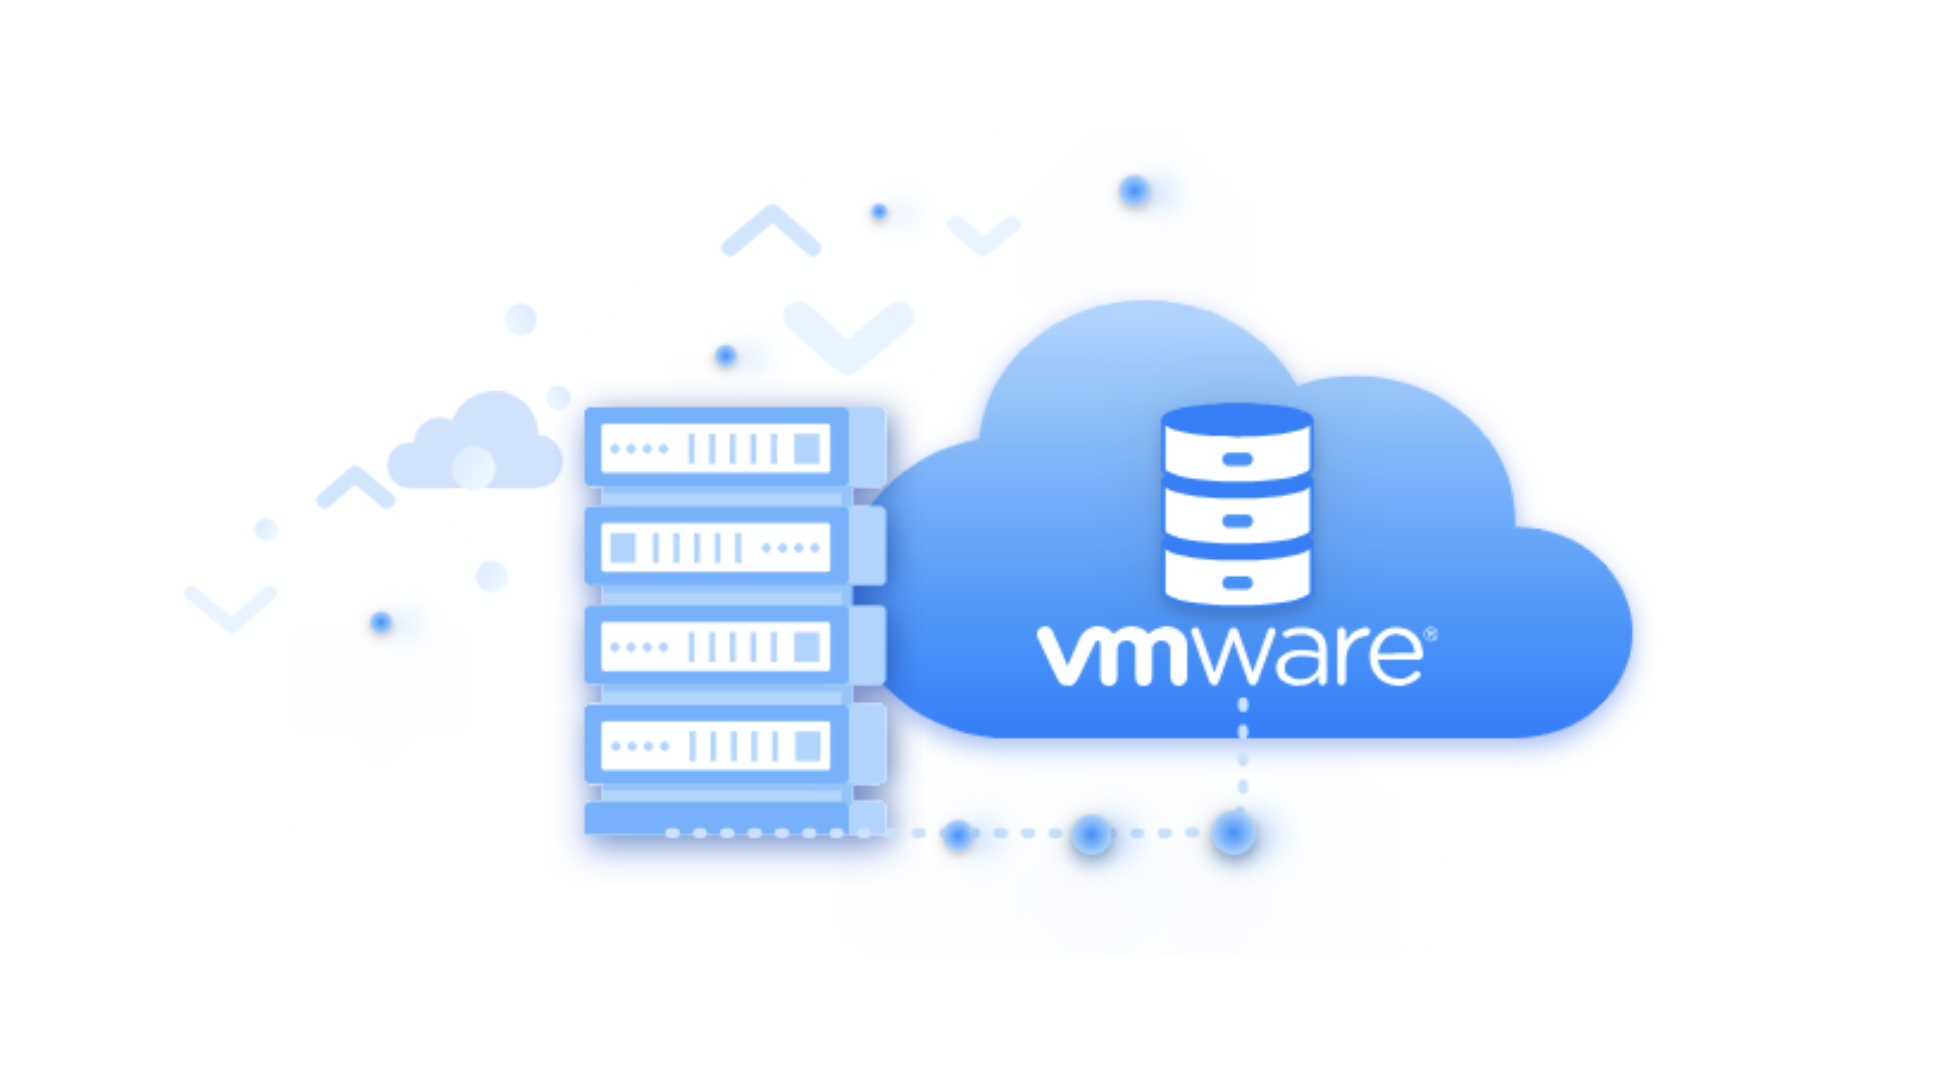 Chức năng chính của VMware là gì?